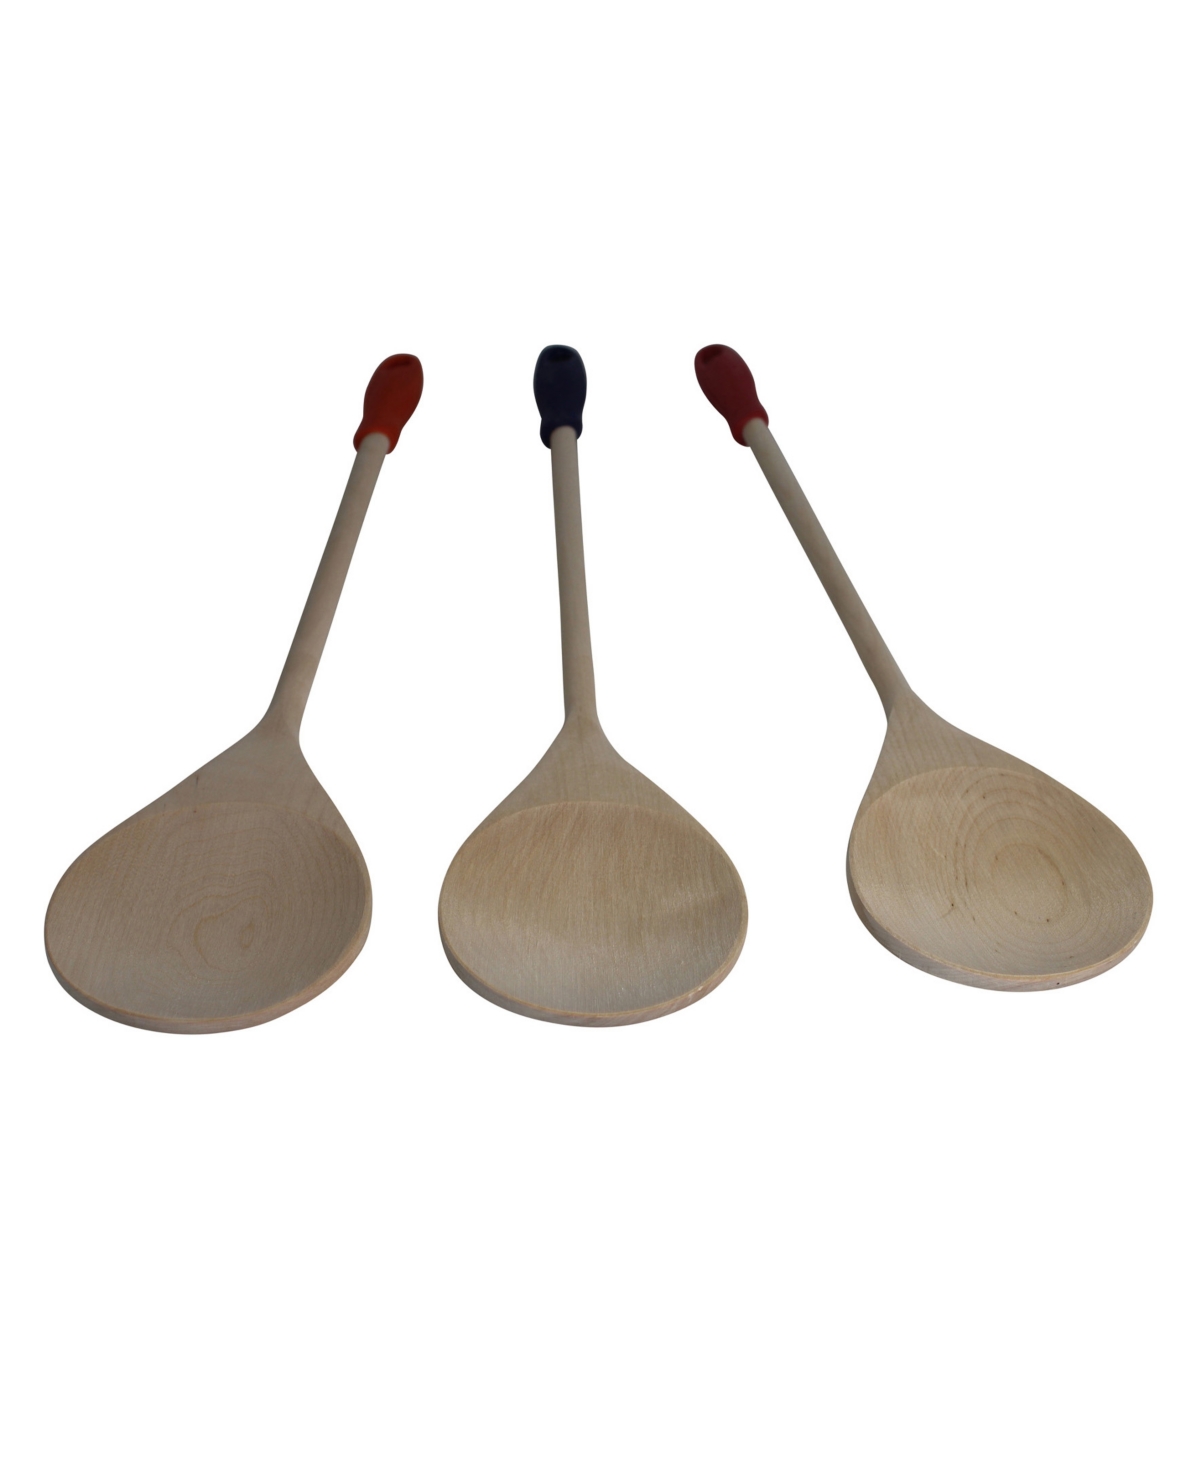 Imusa 18" Wooden Jumbo Spoon